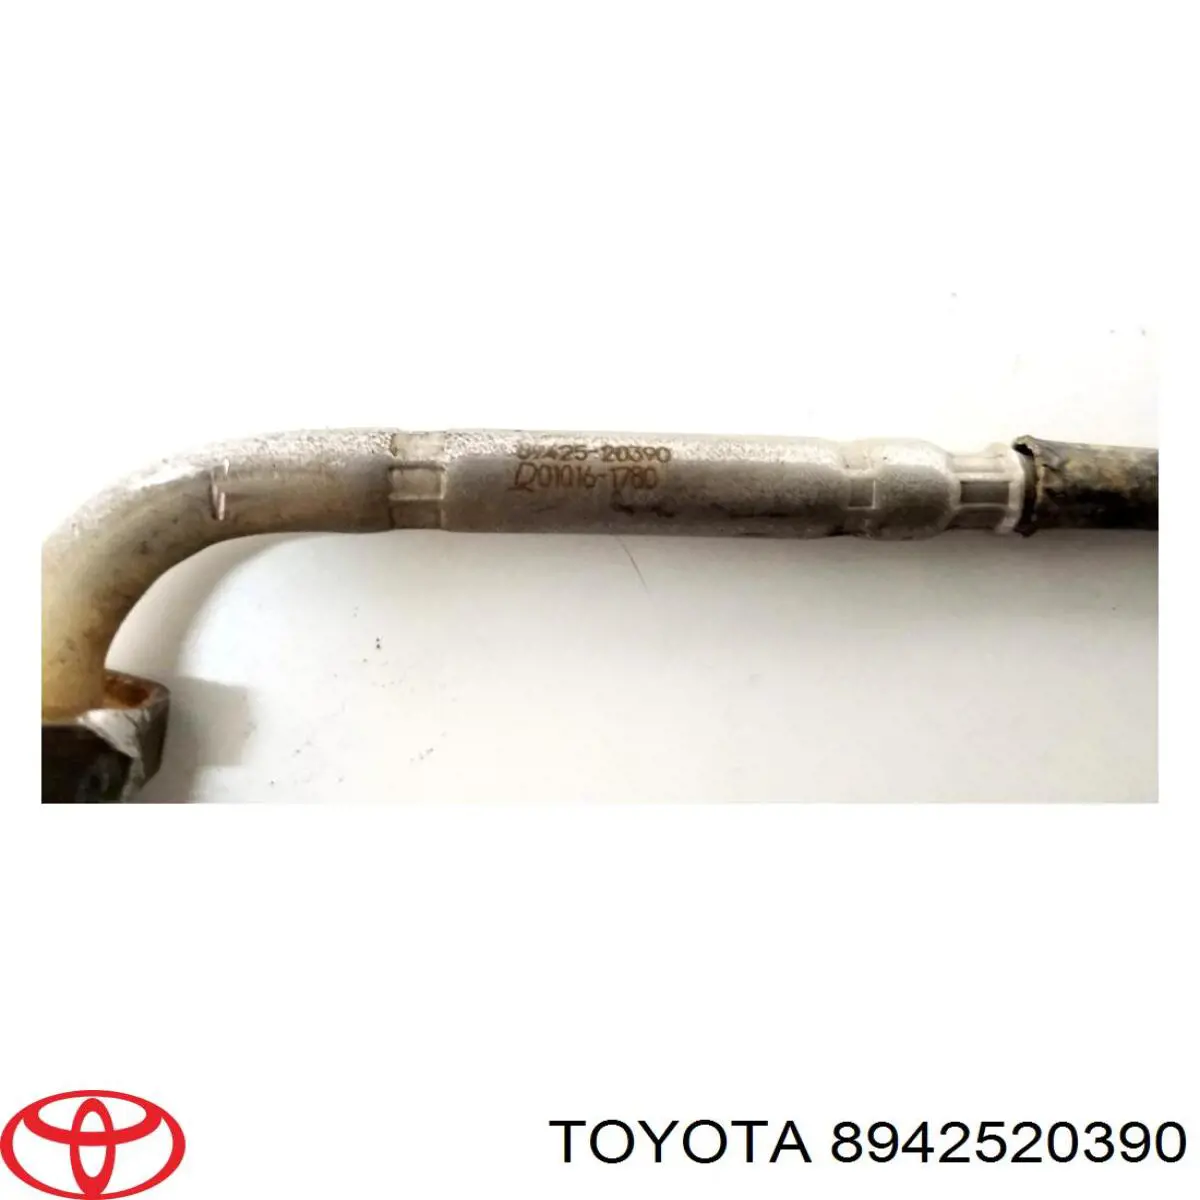 8942520390 Toyota sensor de temperatura dos gases de escape (ge, depois de filtro de partículas diesel)